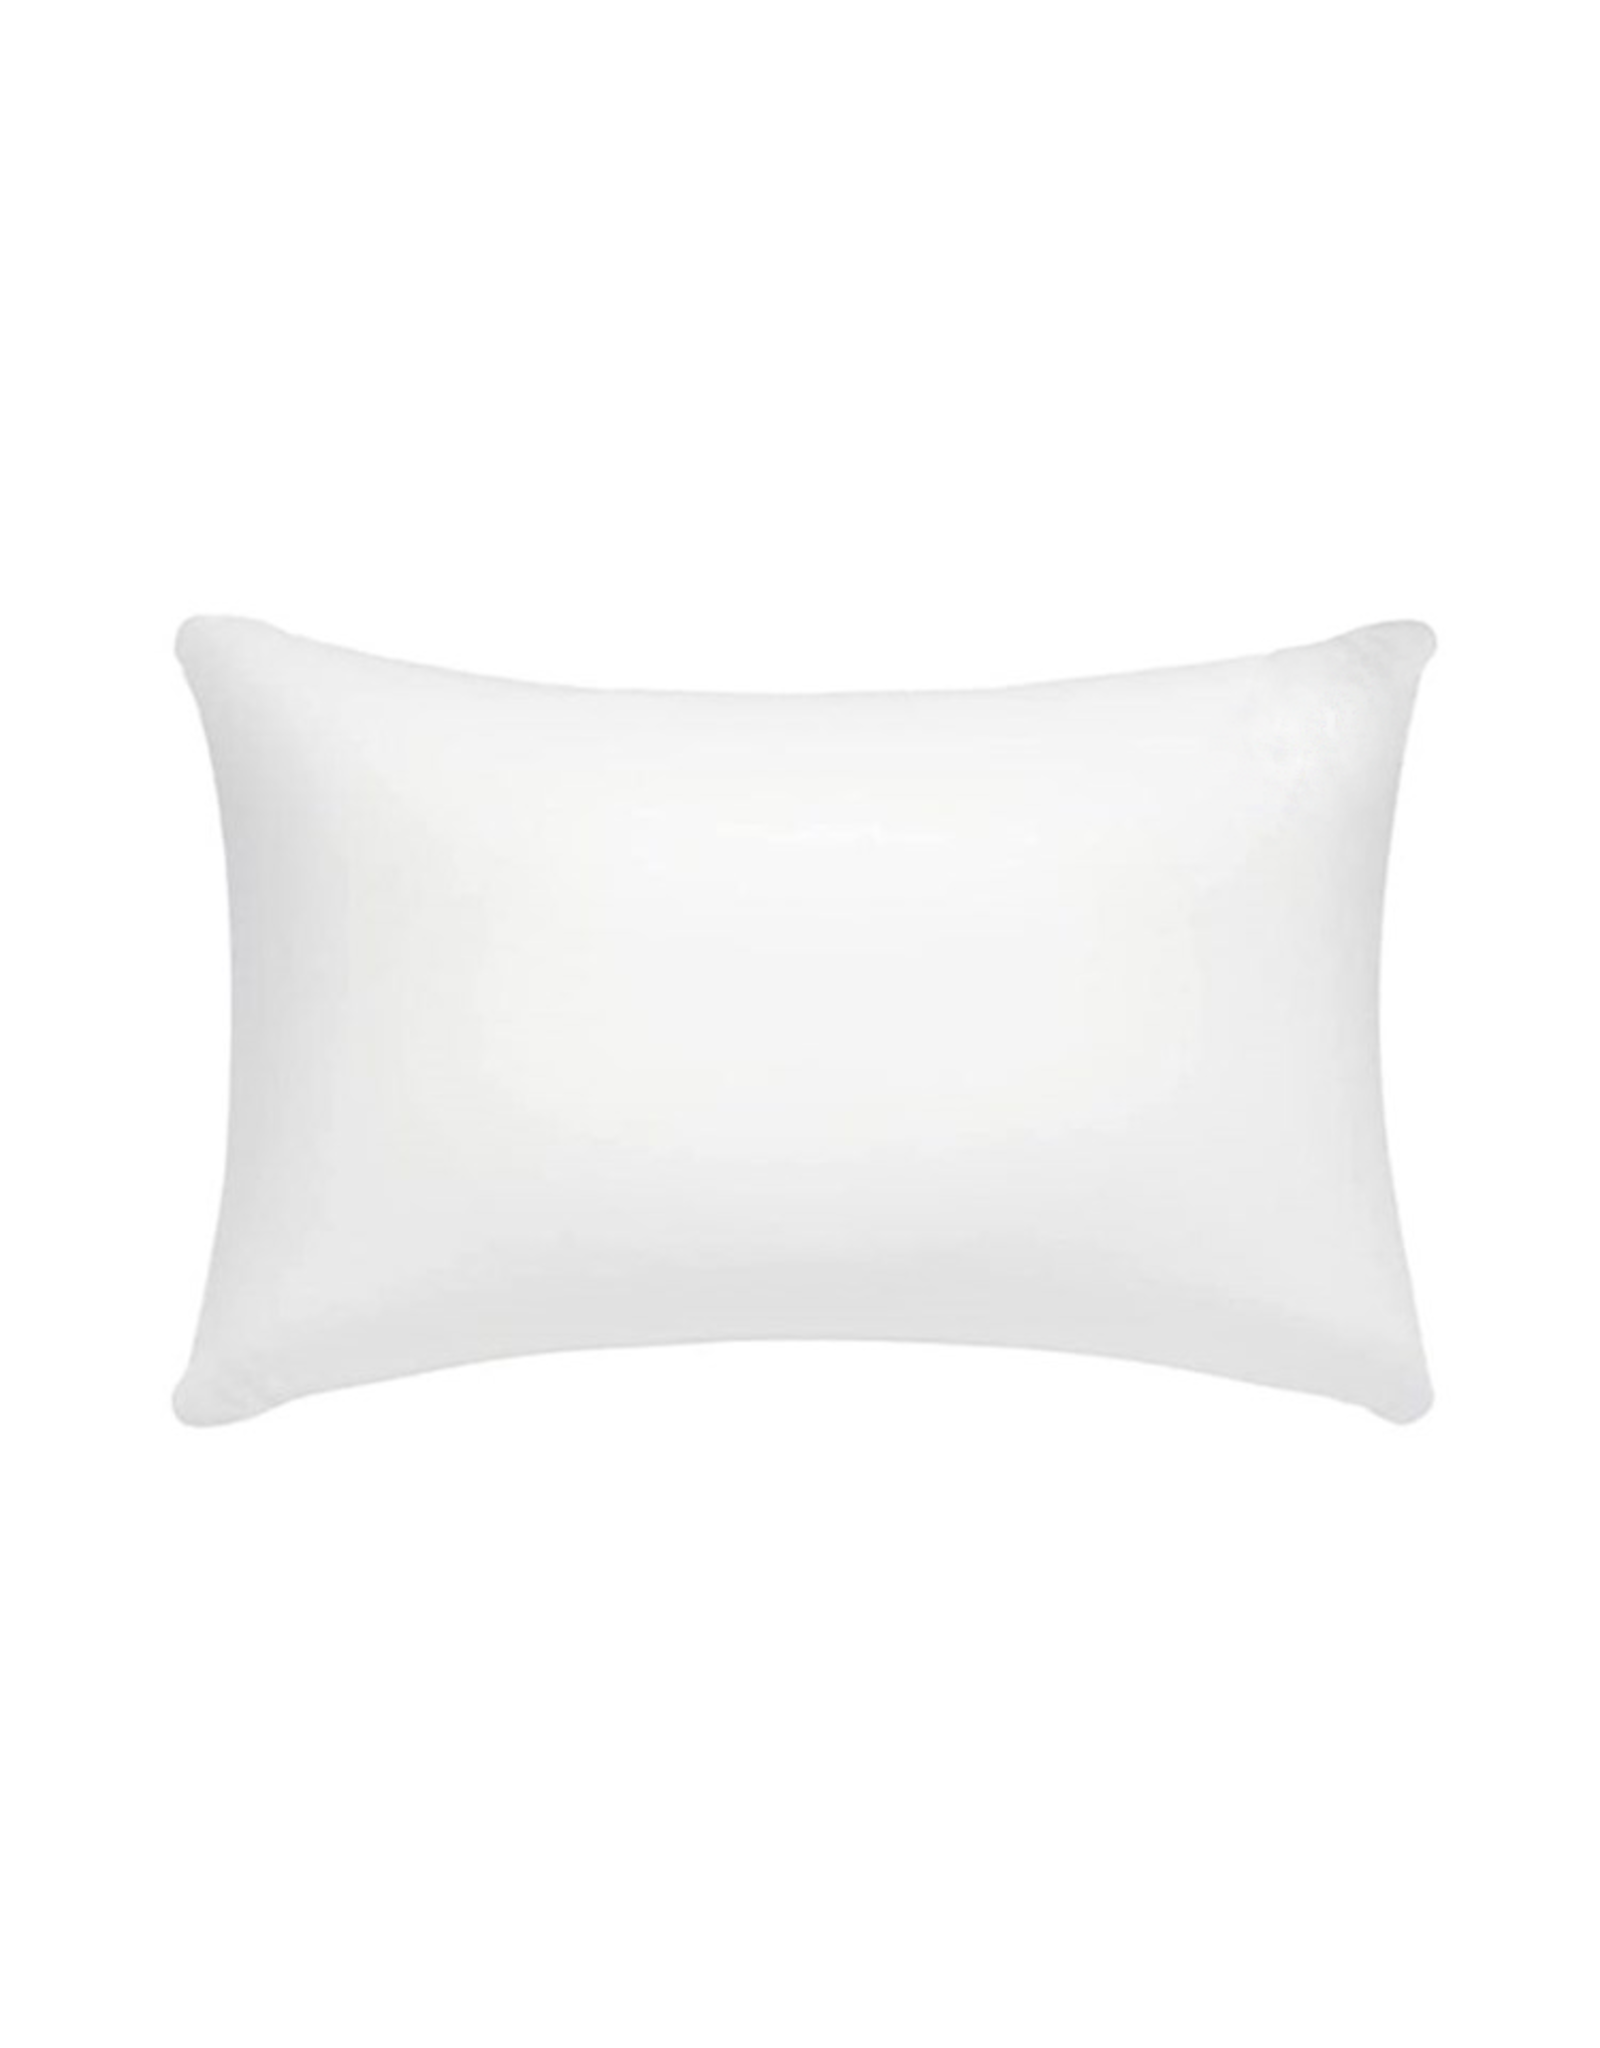 Tide | Hill Pillow Insert | 12x16 Inch Pillow Form